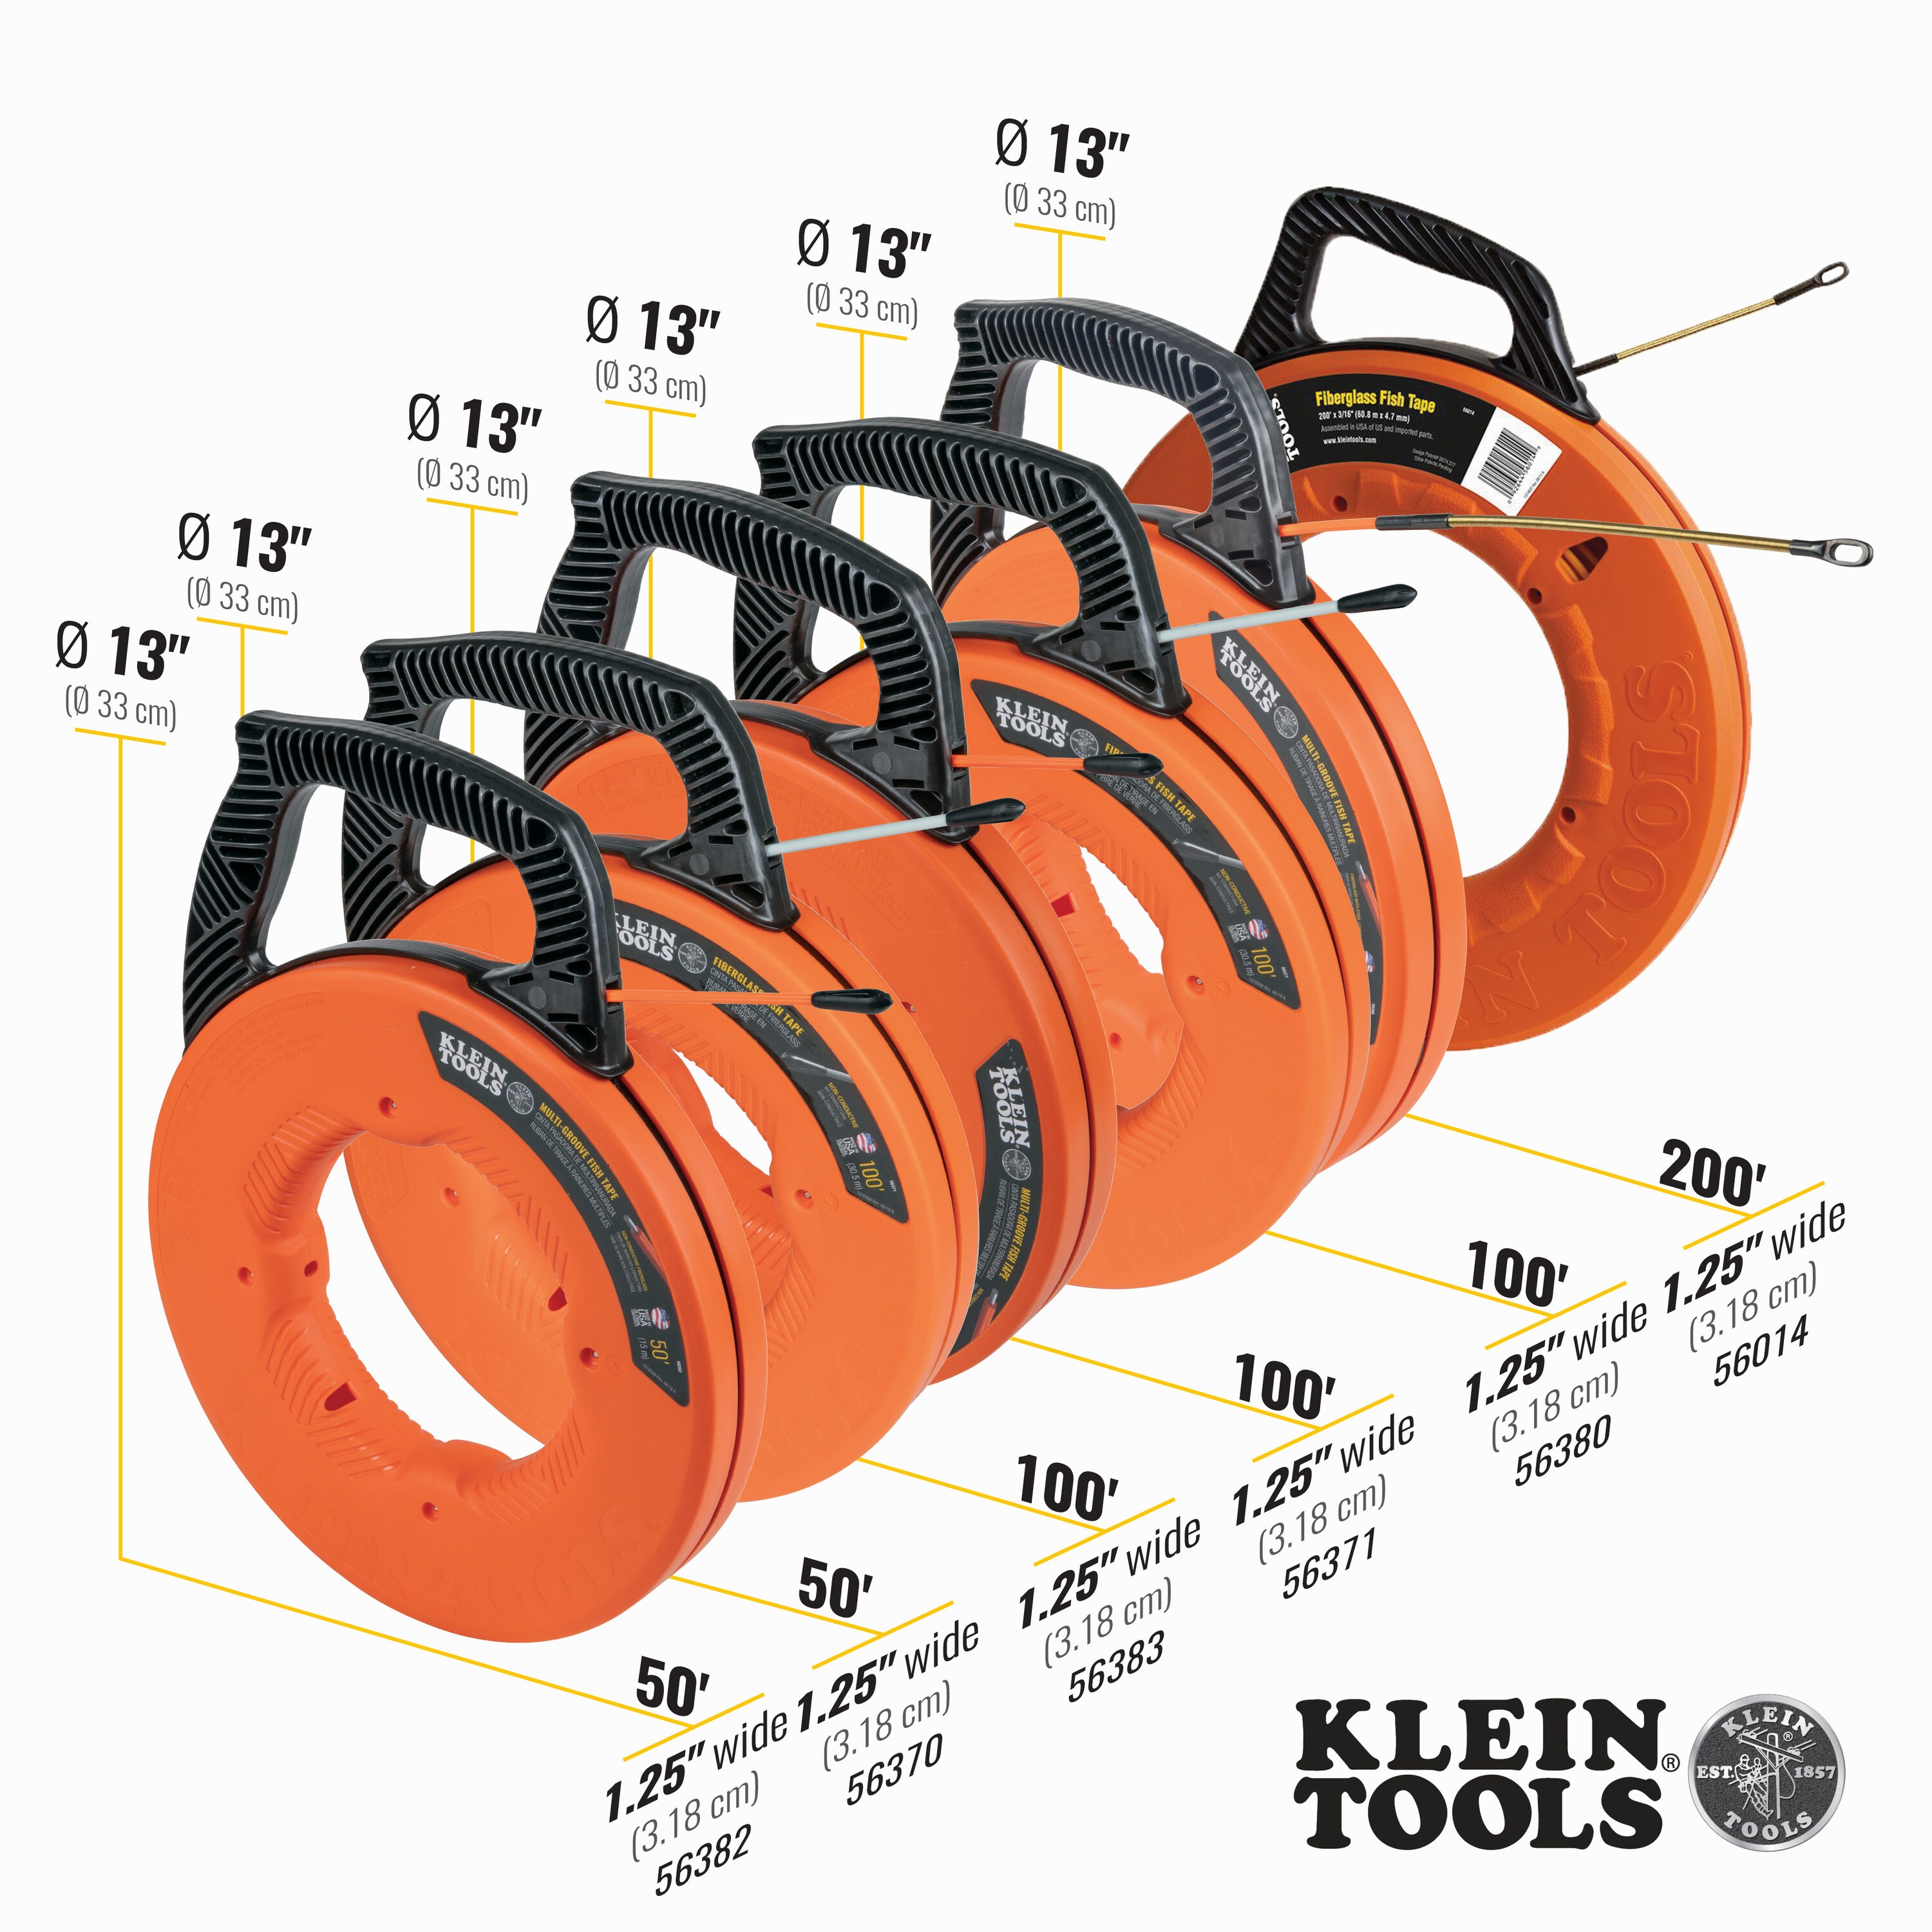 Klein Tools 56014 200' Fiberglass Fish Tape